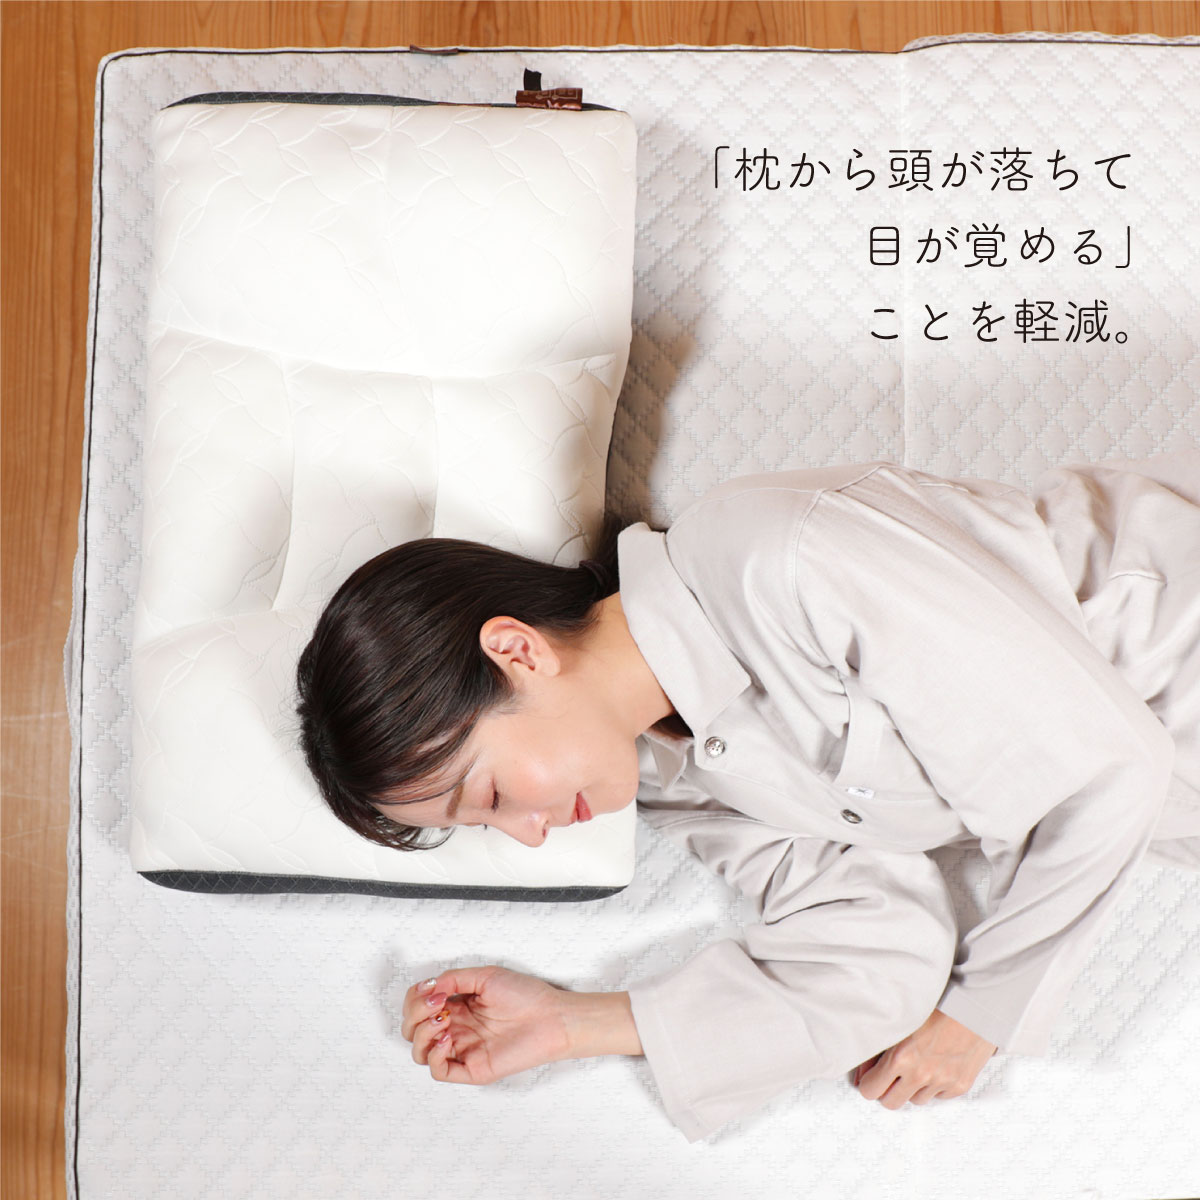 「枕から頭が落ちて目が覚める」ことを軽減。